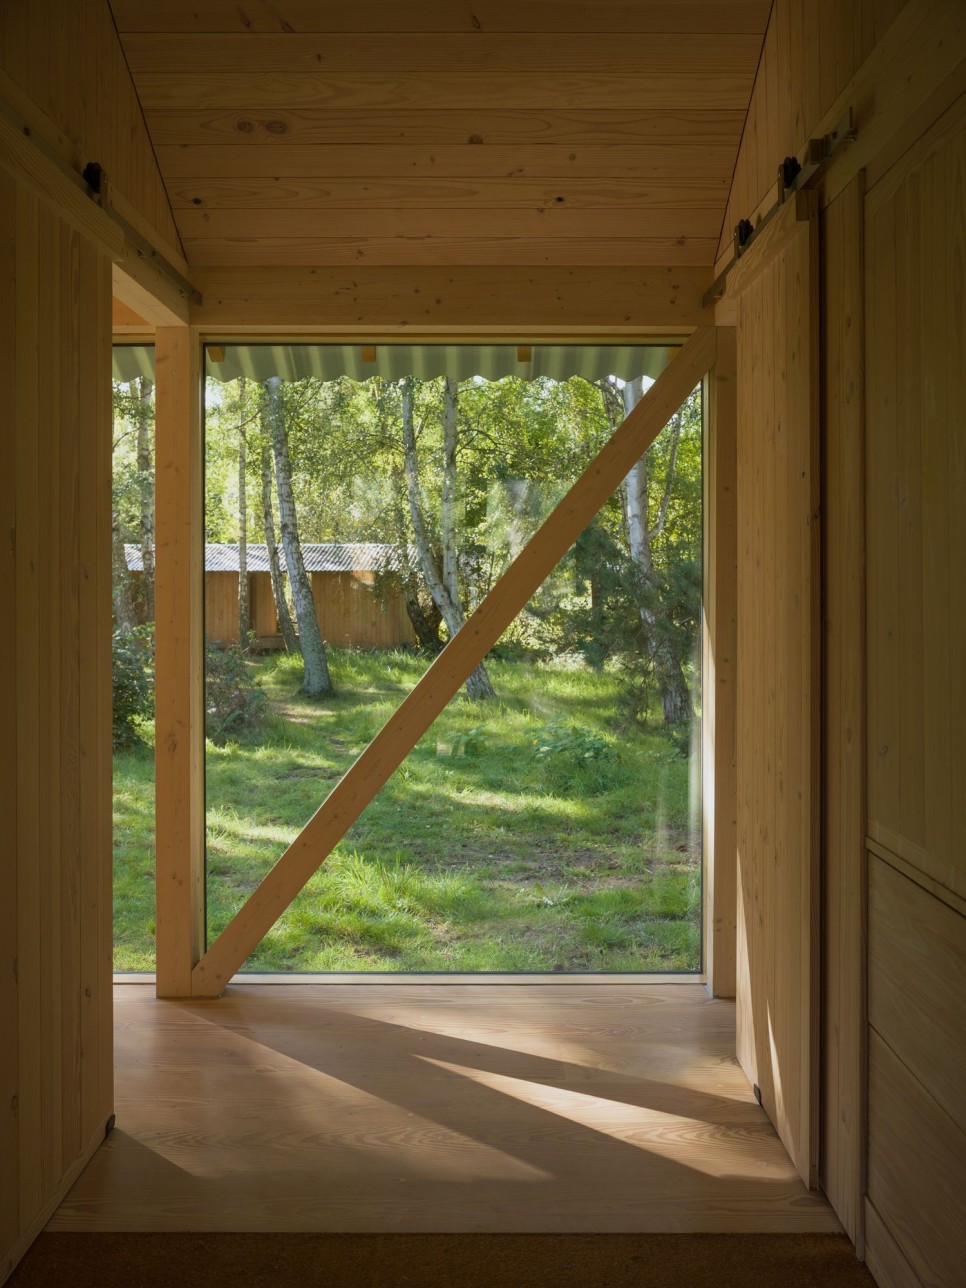 세로 패턴 숲속에 낮은 수평 구조로 지은 여름 별장, Vollerup House by Høyer Arkitektur